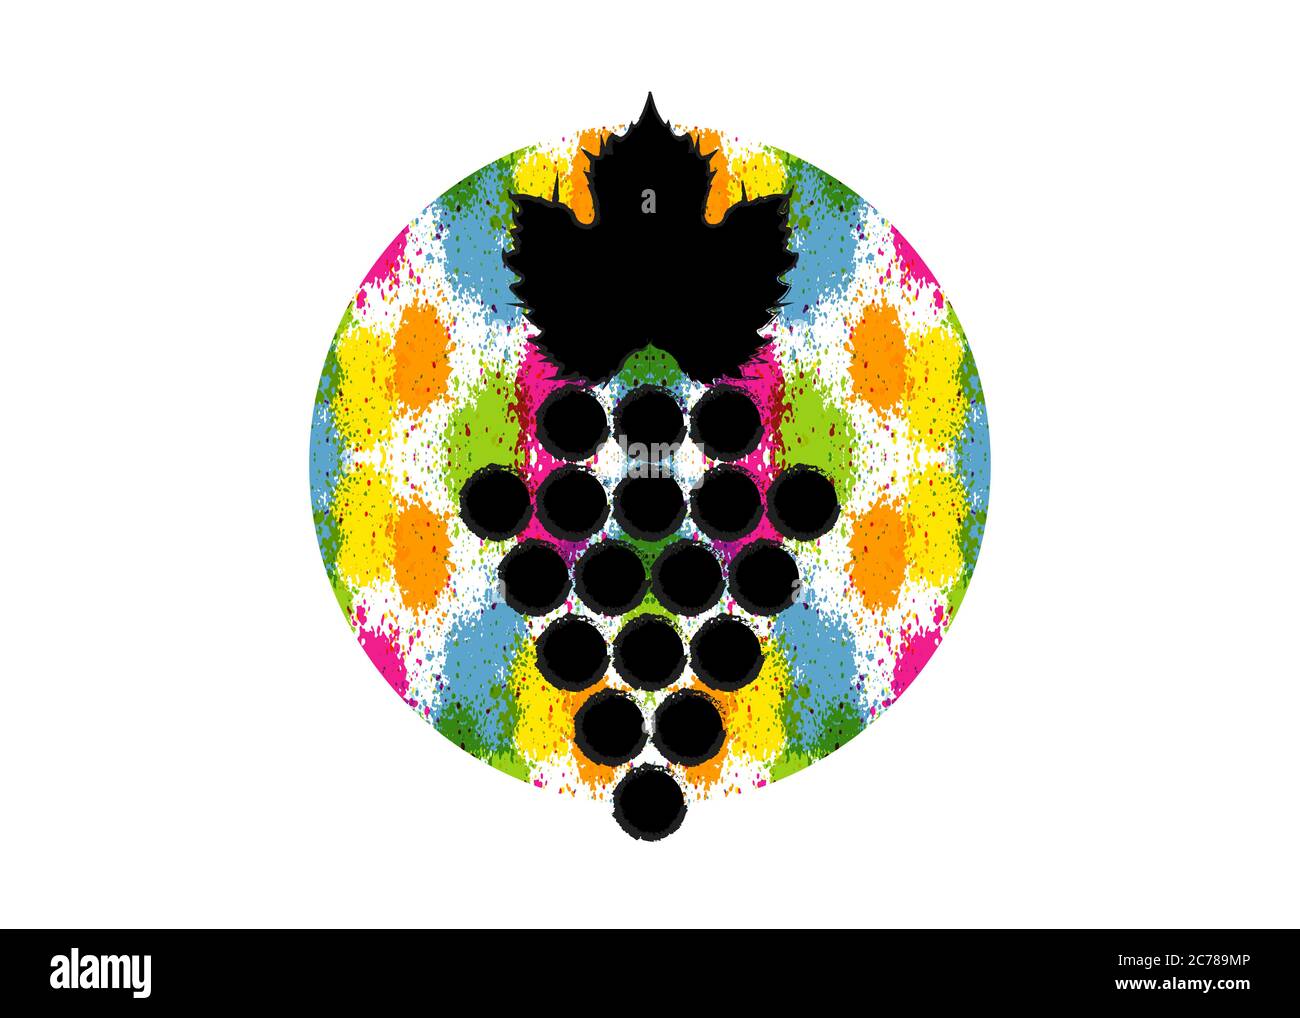 Illustration vectorielle d'un fond coloré et de raisins de vigne. Aquarelle circulaire abstraite avec baies de raisin. Concept de design pour l'étiquette de vin Illustration de Vecteur